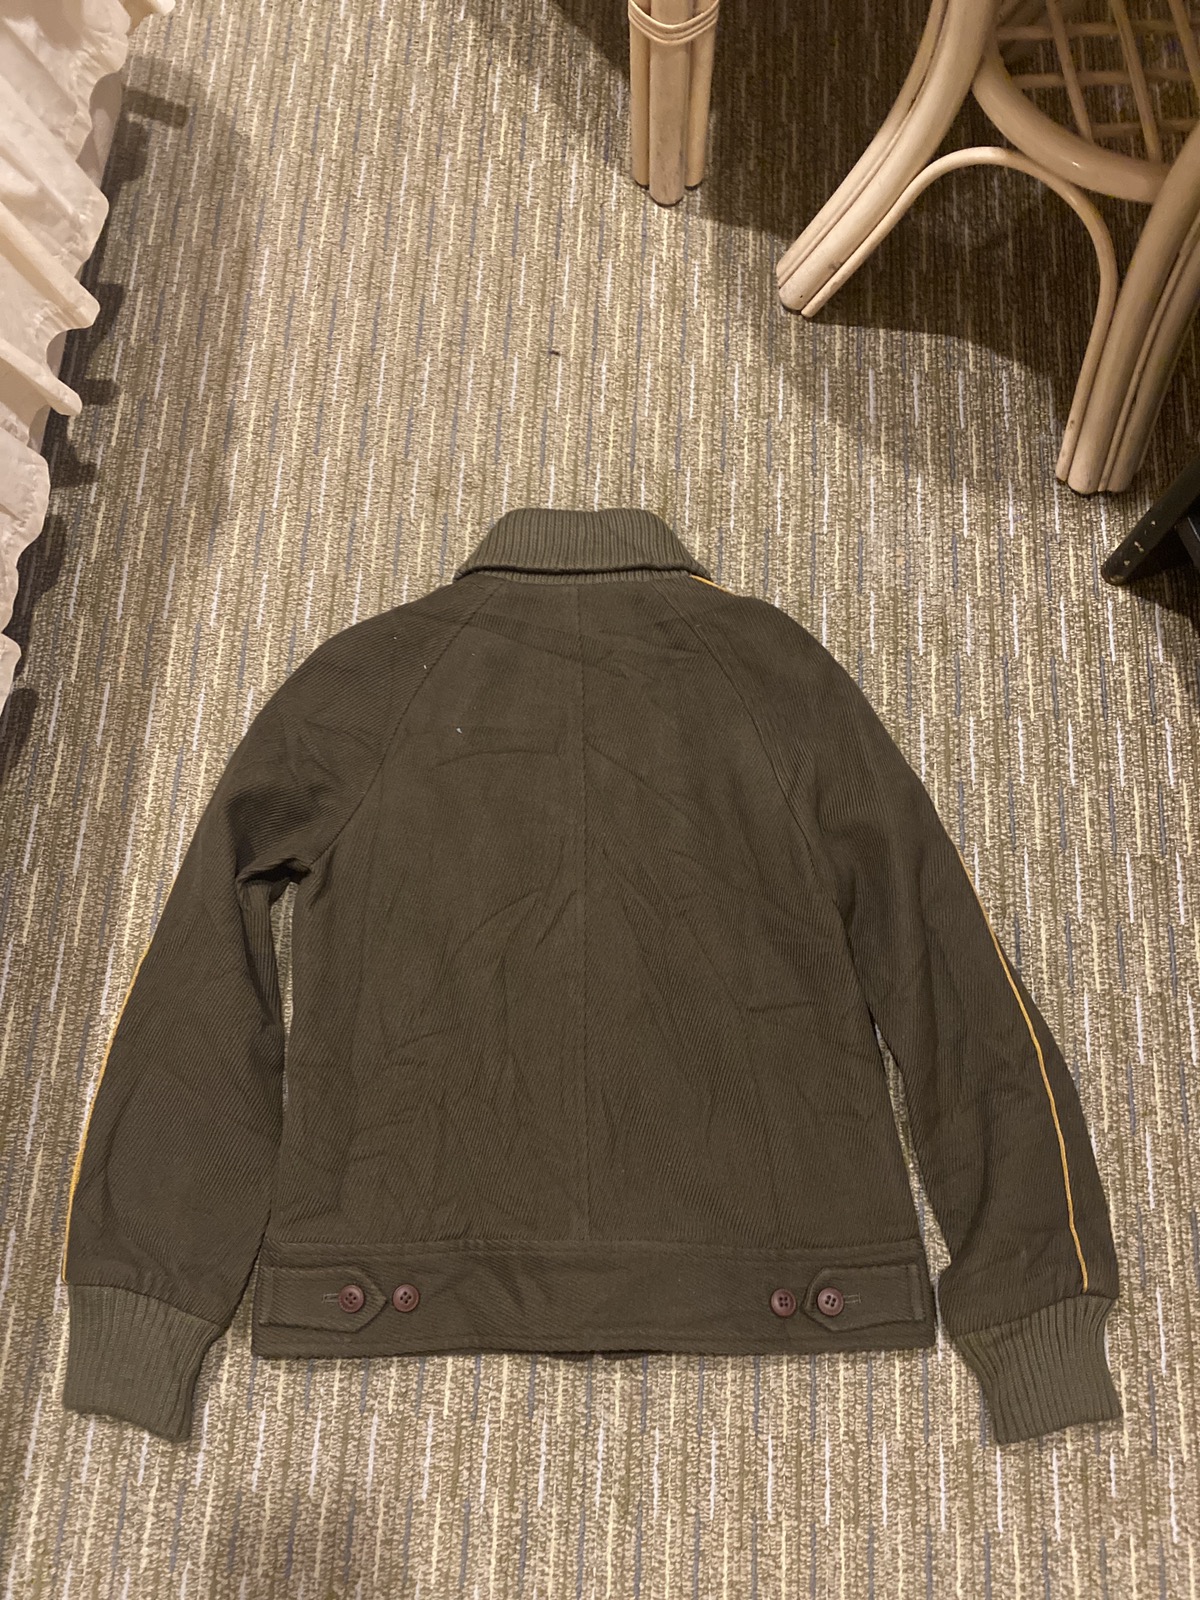 Japanese Brand - Vintage Relacher Coat Jacket JapaneseBrand Nice Design - 4